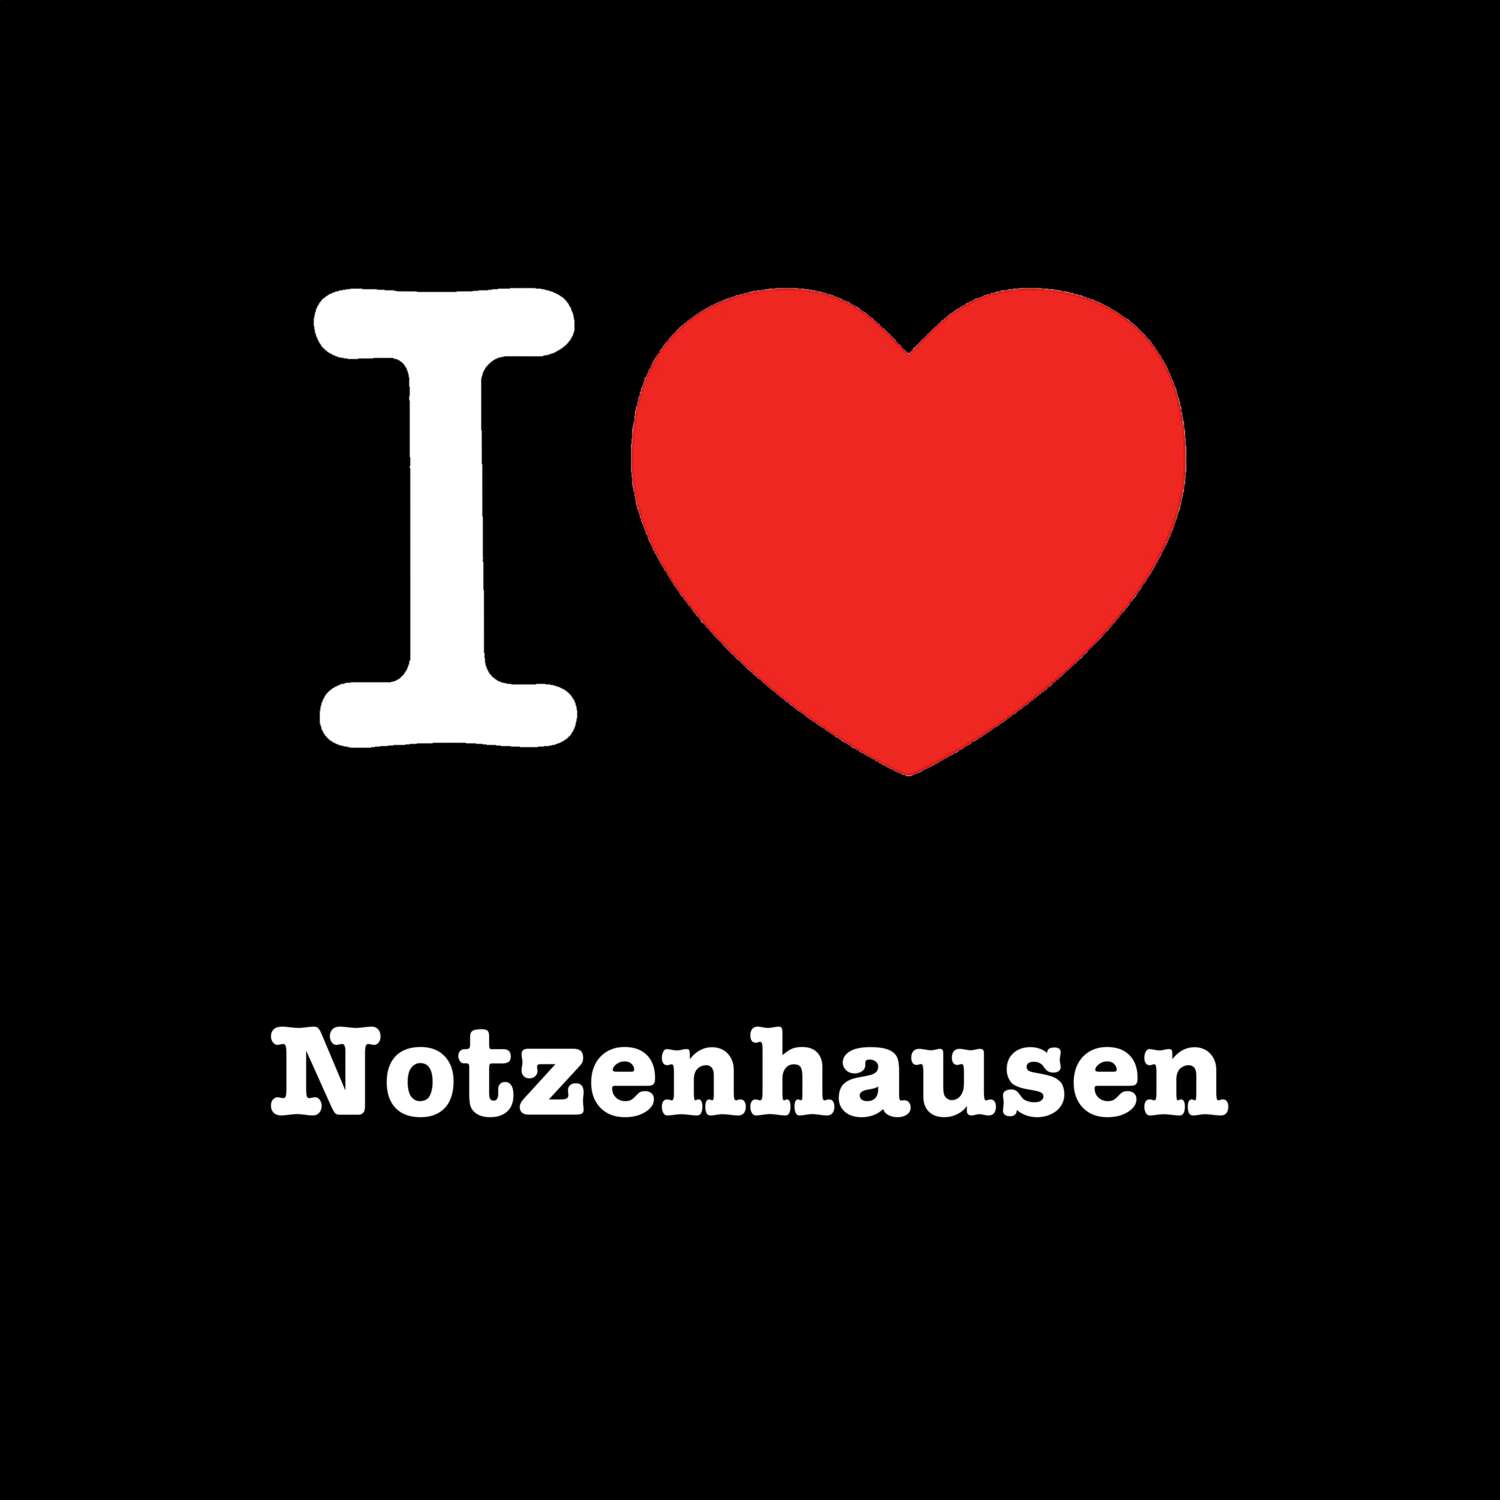 Notzenhausen T-Shirt »I love«